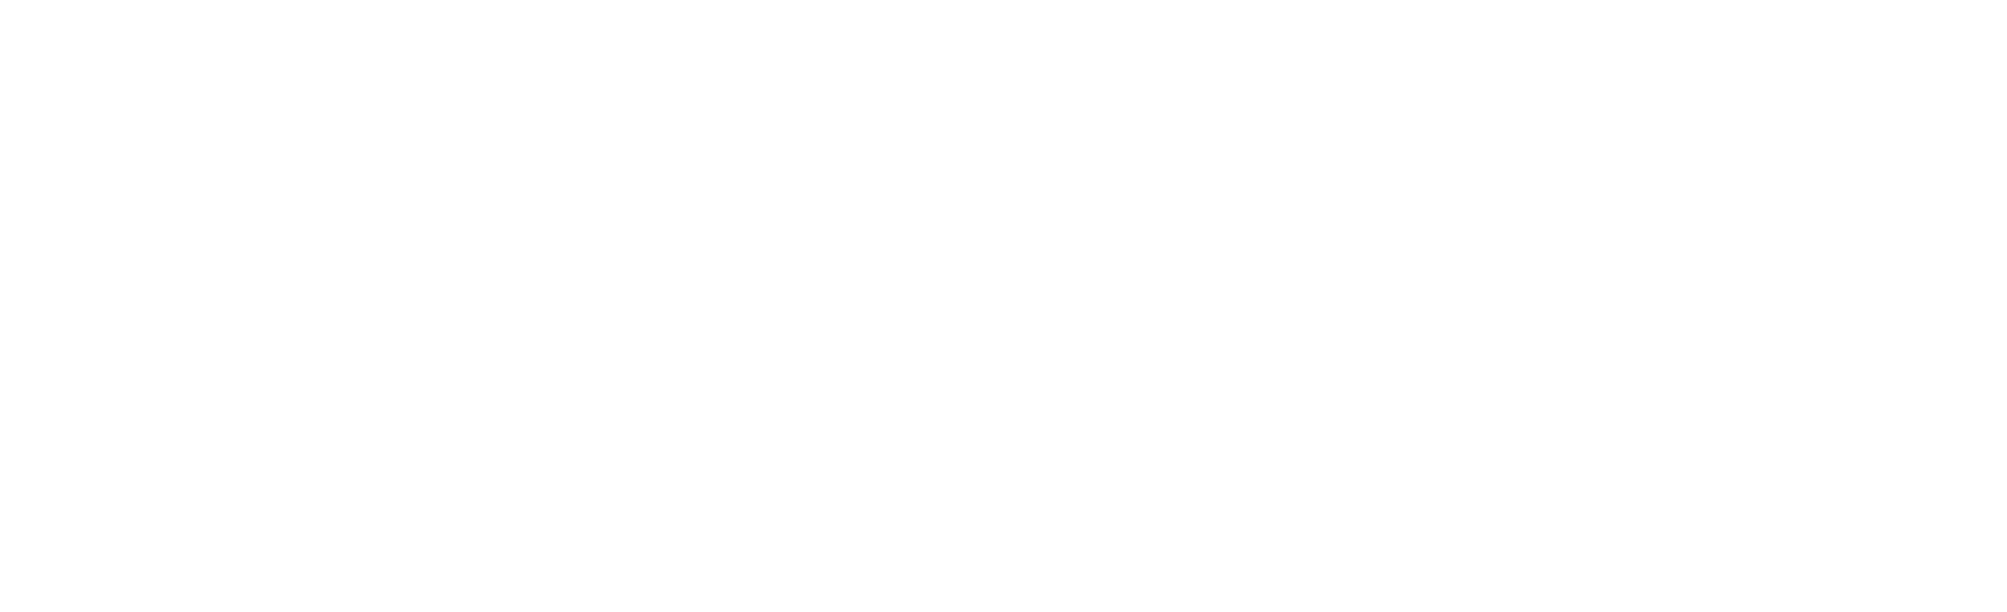 Deuter-Logo-RGB_Background_1000x1000.jpg